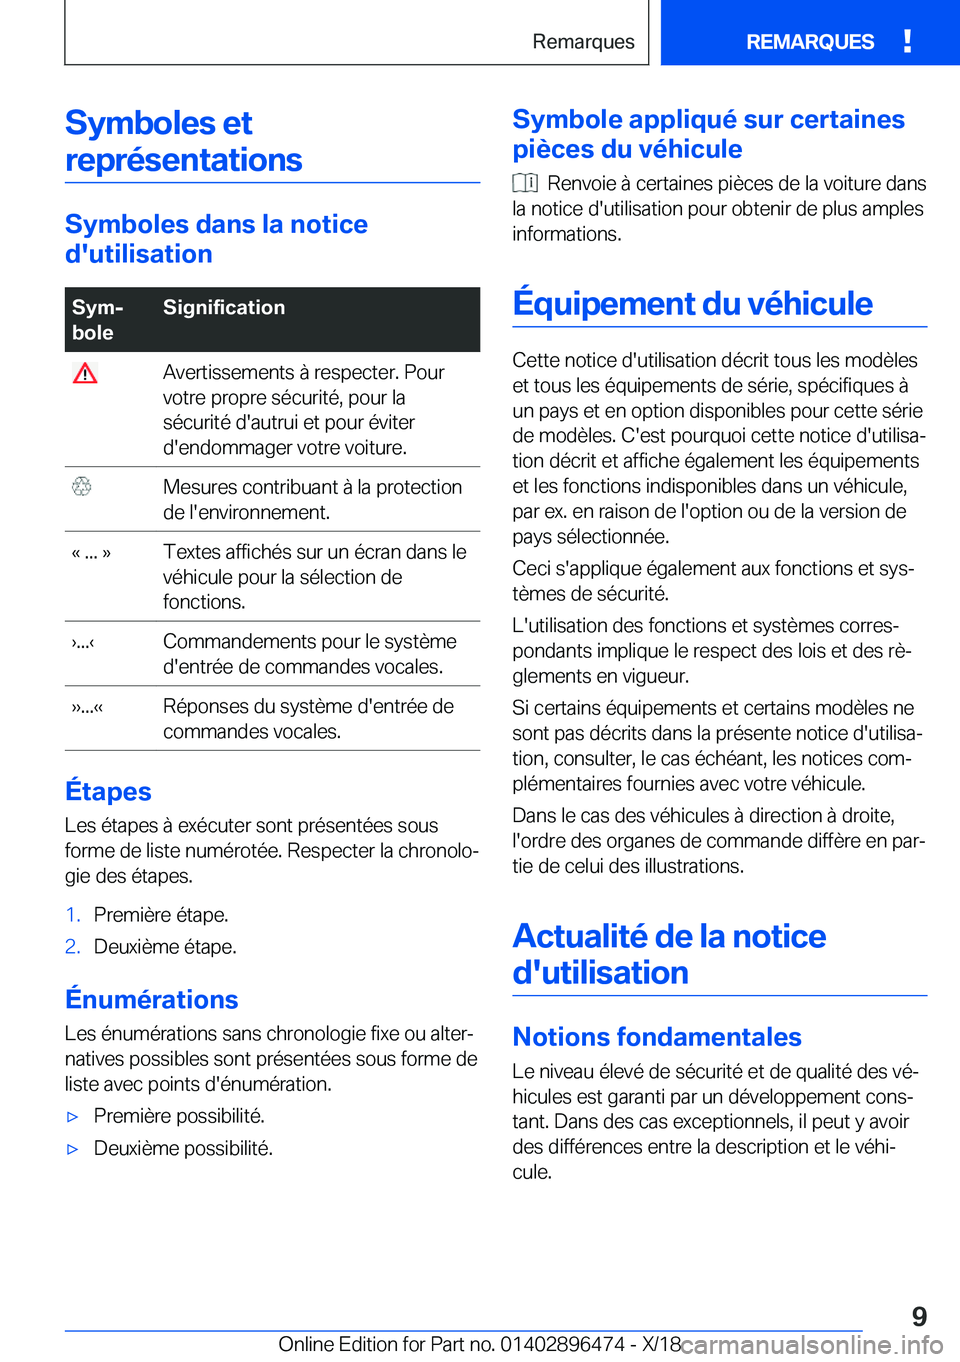 BMW X1 2019  Notices Demploi (in French) �S�y�m�b�o�l�e�s��e�t�r�e�p�r�é�s�e�n�t�a�t�i�o�n�s
�S�y�m�b�o�l�e�s��d�a�n�s��l�a��n�o�t�i�c�e
�d�'�u�t�i�l�i�s�a�t�i�o�n
�S�y�mj
�b�o�l�e�S�i�g�n�i�f�i�c�a�t�i�o�n��A�v�e�r�t�i�s�s�e�m�e�